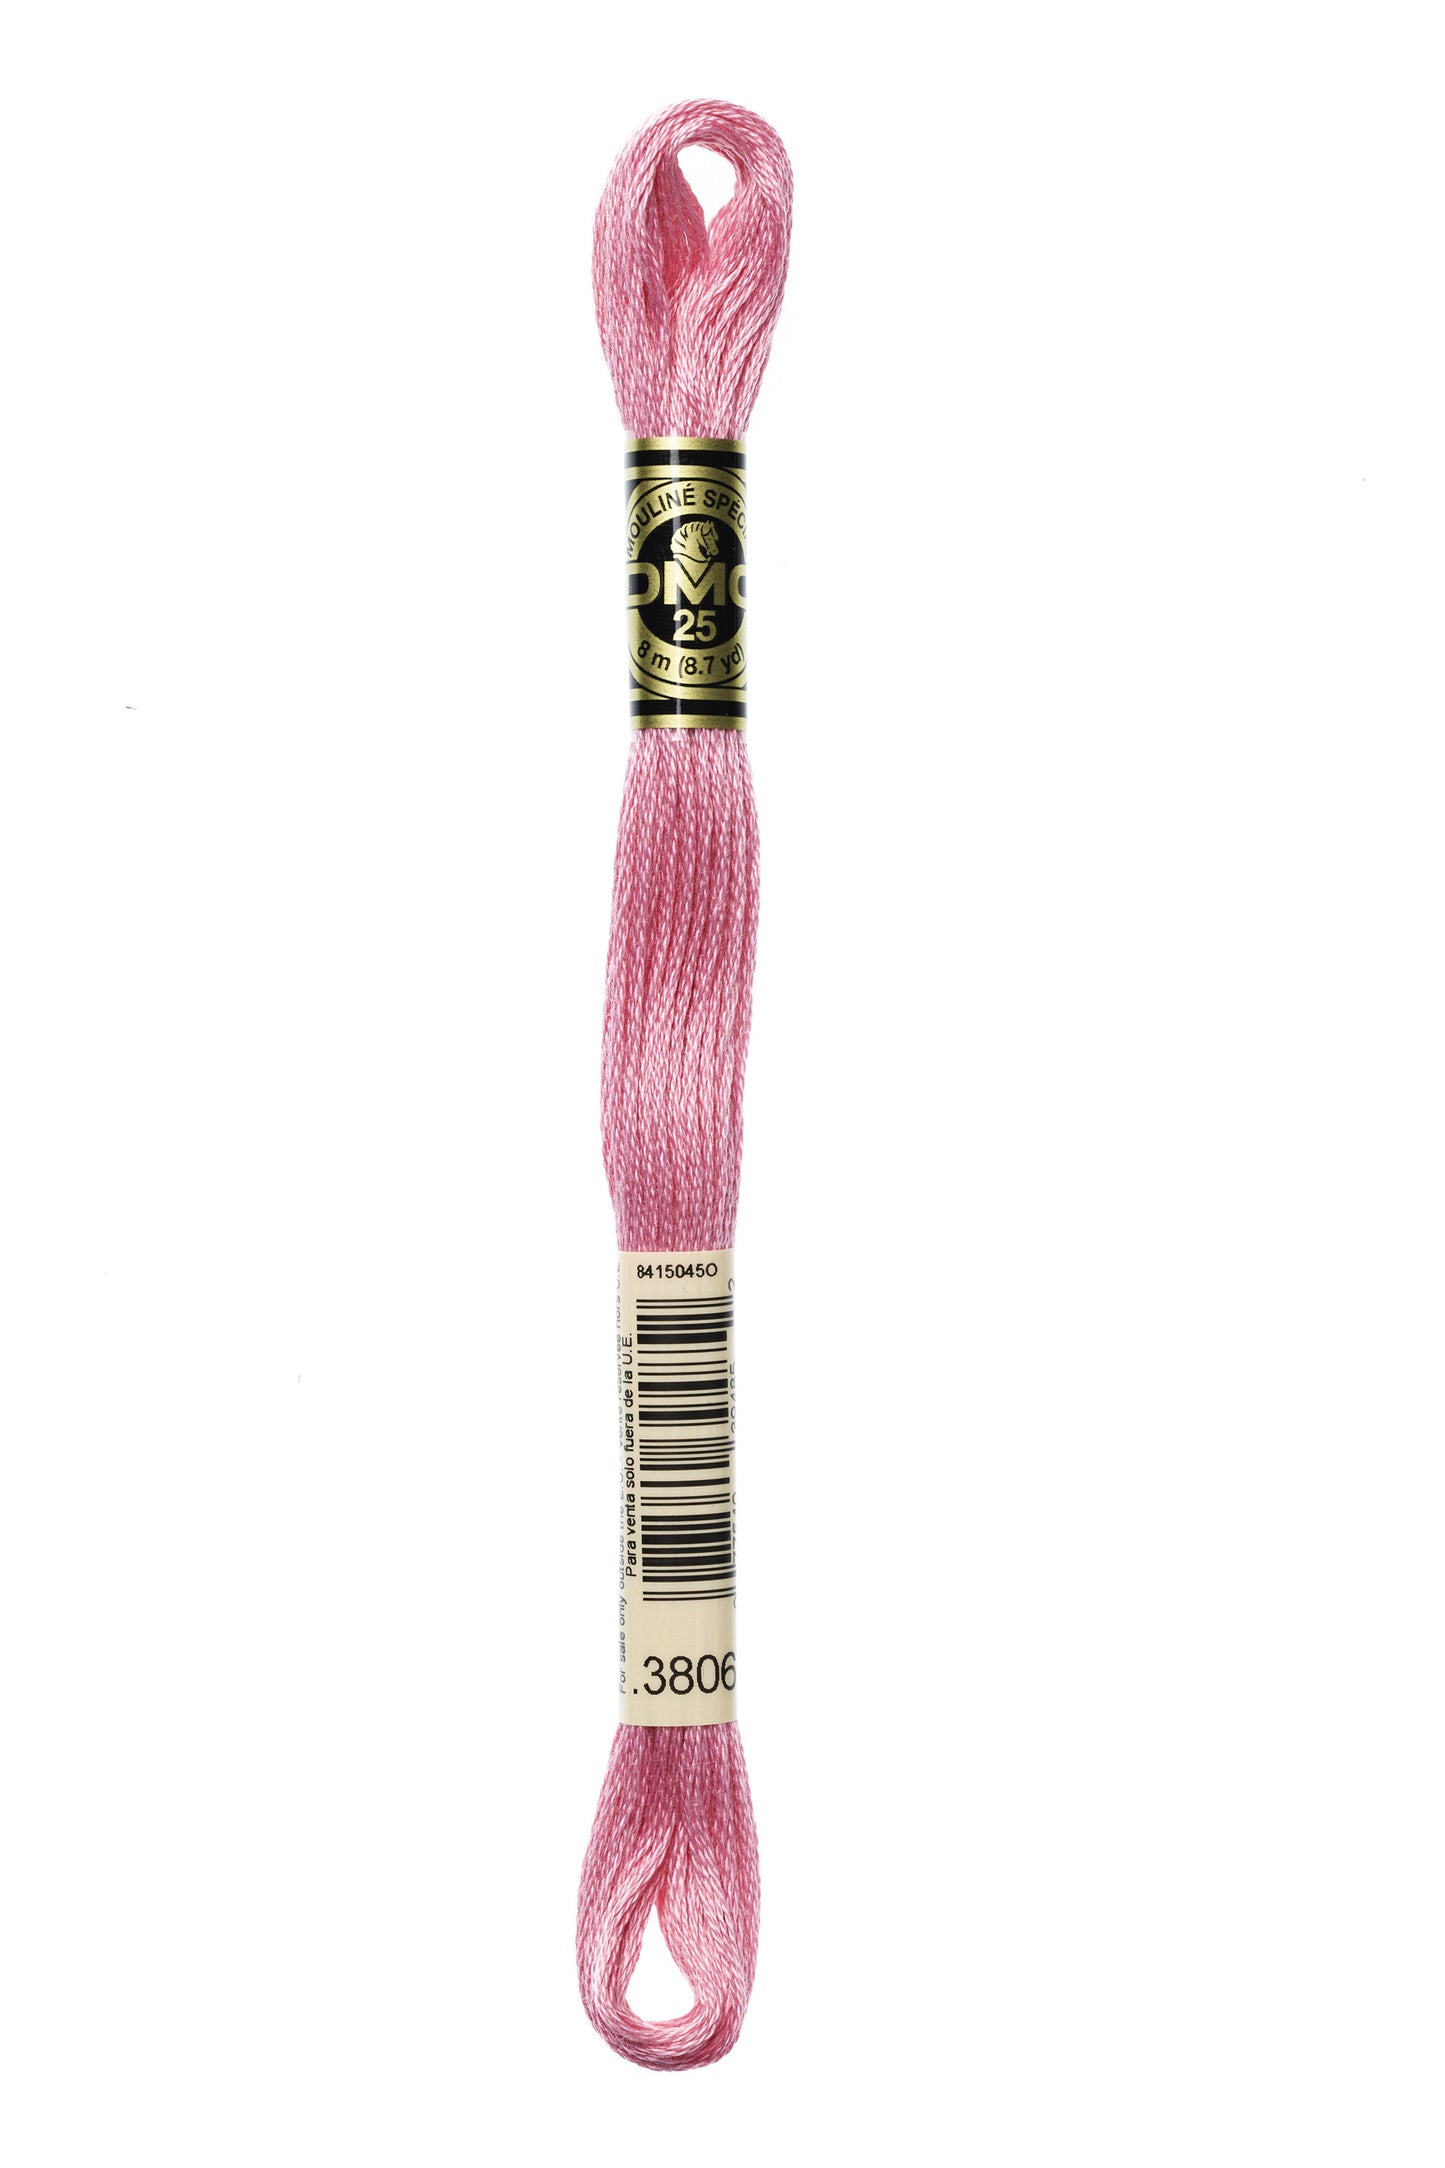 DMC Floss # 3806 - Light Cyclamen Pink